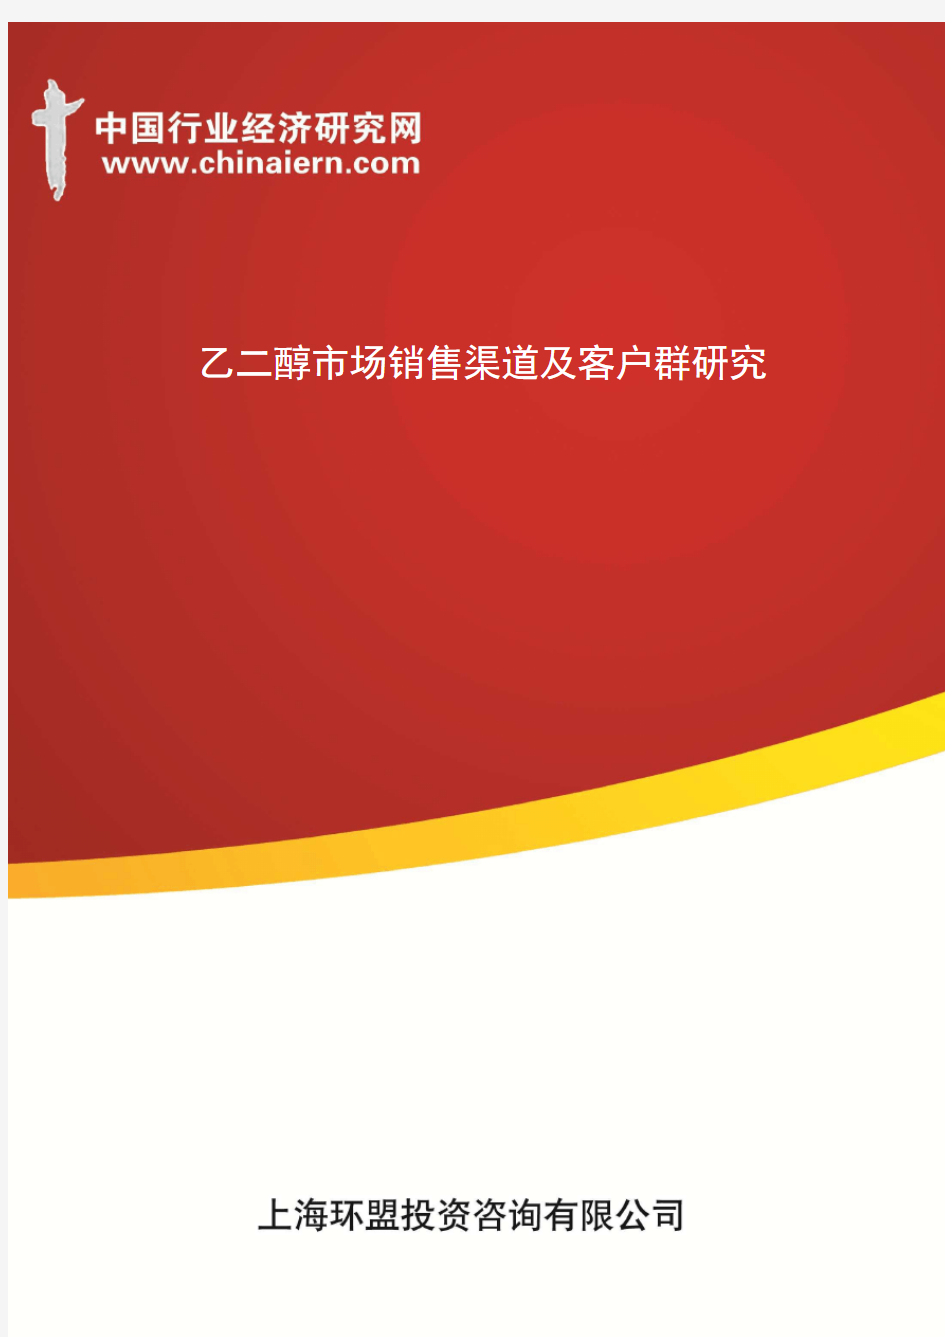 乙二醇市场销售渠道及客户群研究(上海环盟)